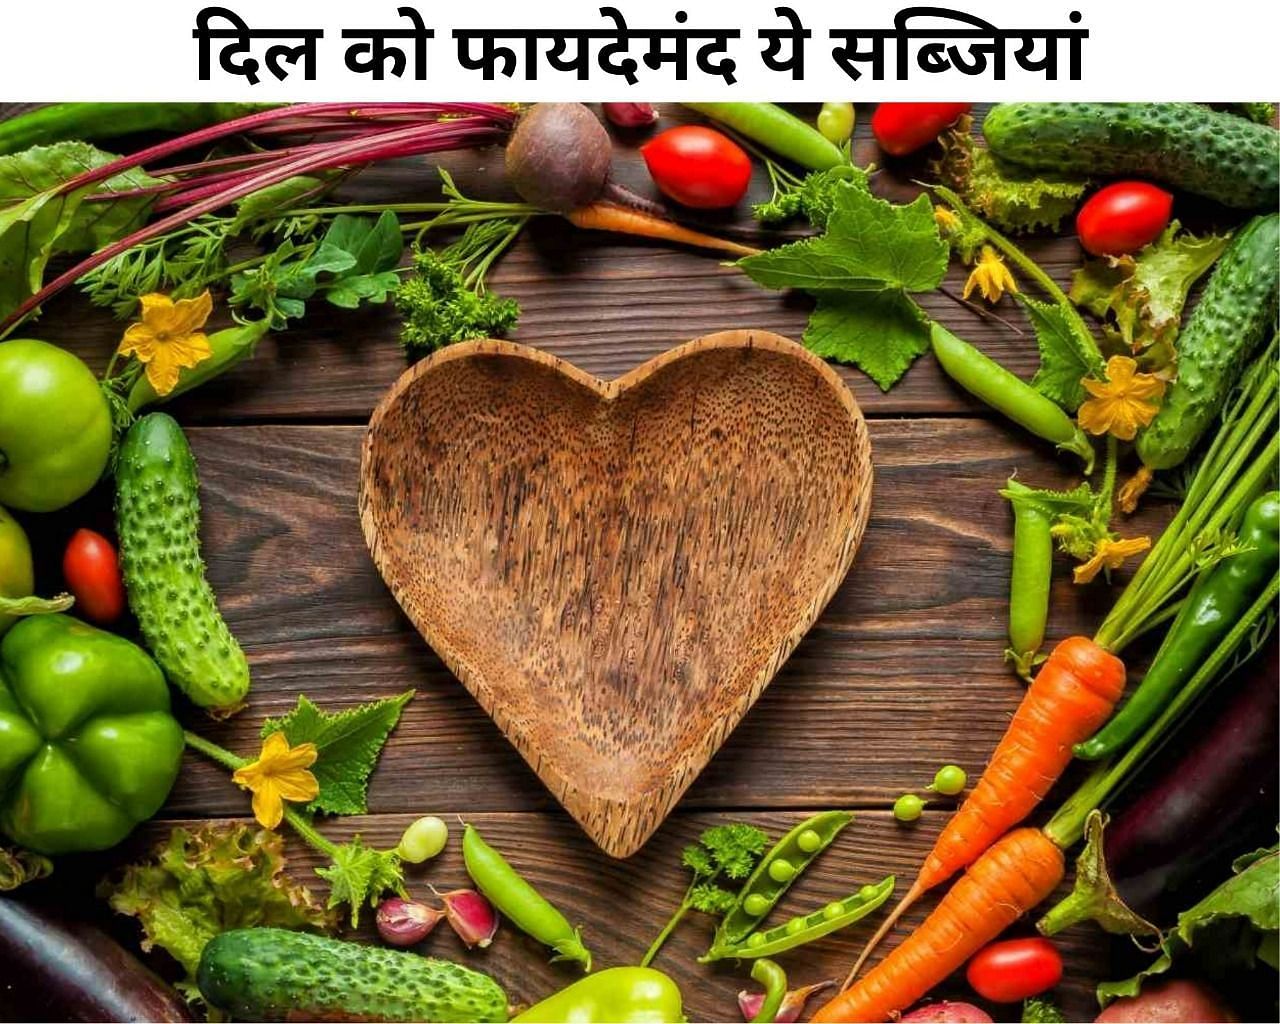 दिल को फायदेमंद ये सब्जियां (फोटो - sportskeeda hindi)